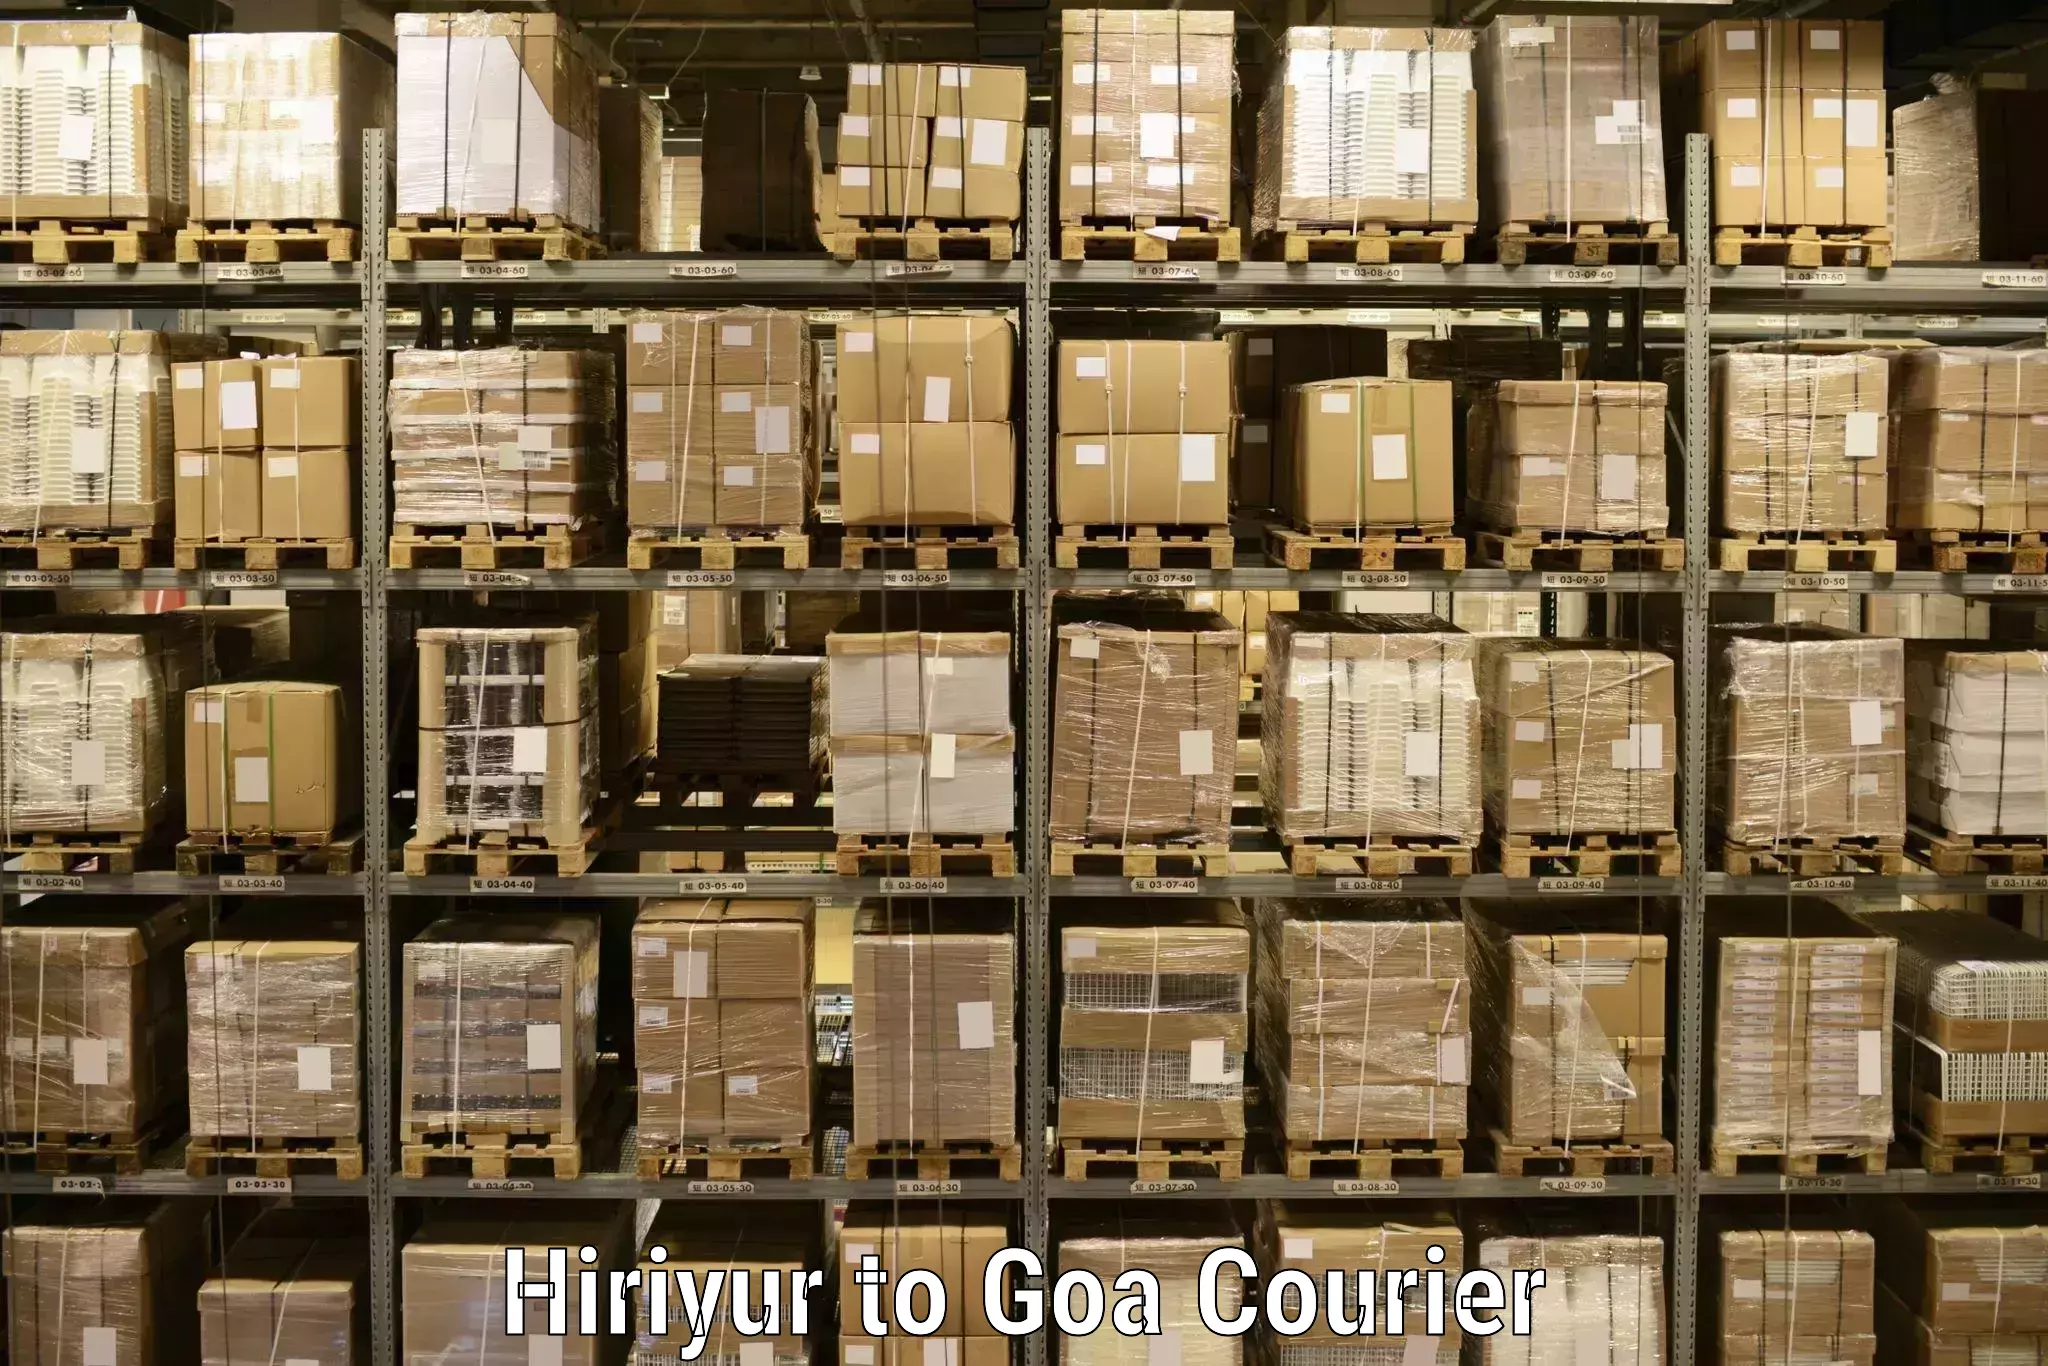 Cargo courier service Hiriyur to South Goa